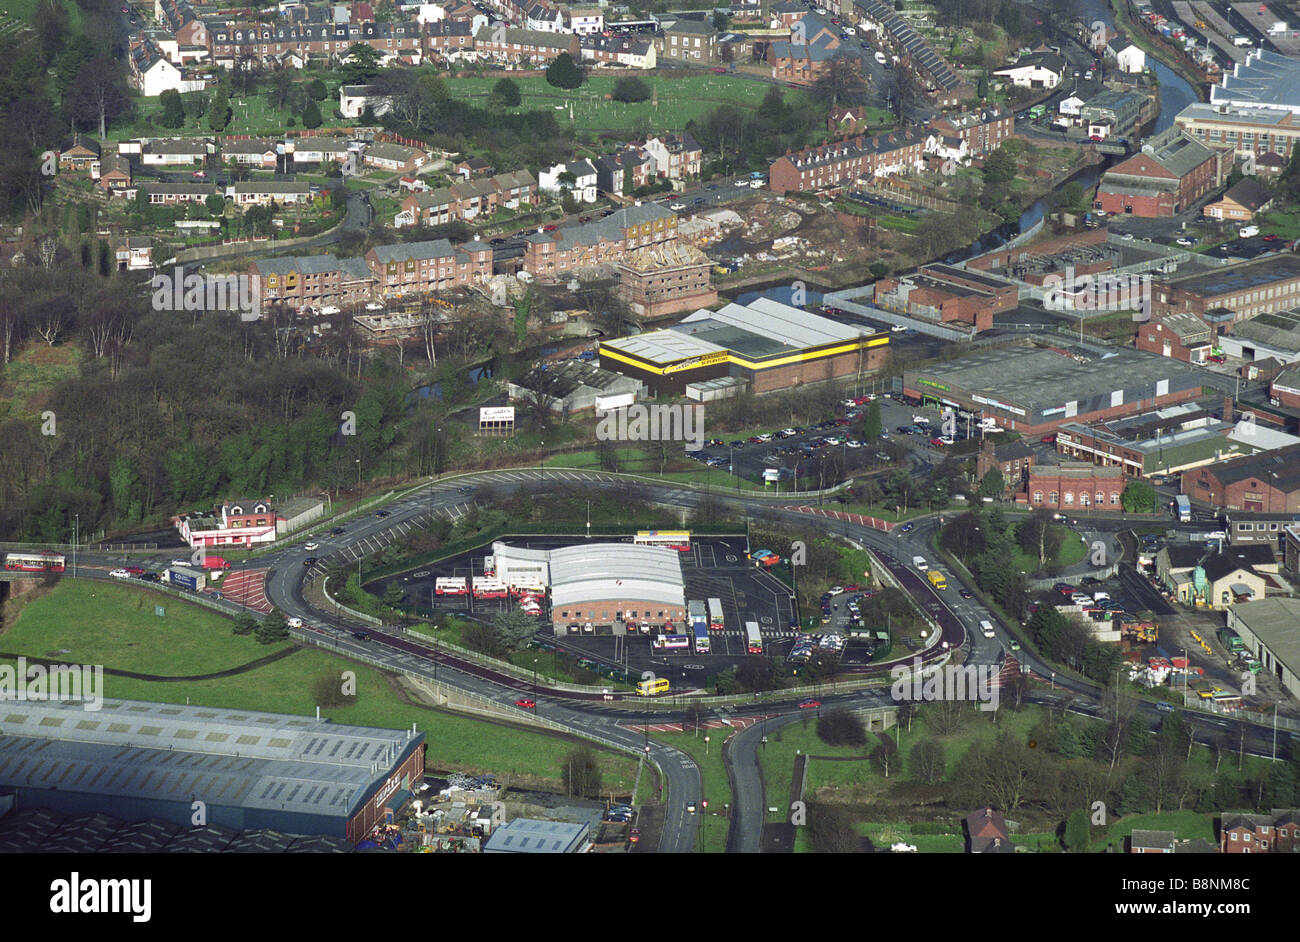 Luftaufnahme von Kidderminster, Worcester Straße Insel Worcestershire England Uk. In der Mitte des Kreisverkehrs befindet sich die Bushaltestelle. Stockfoto